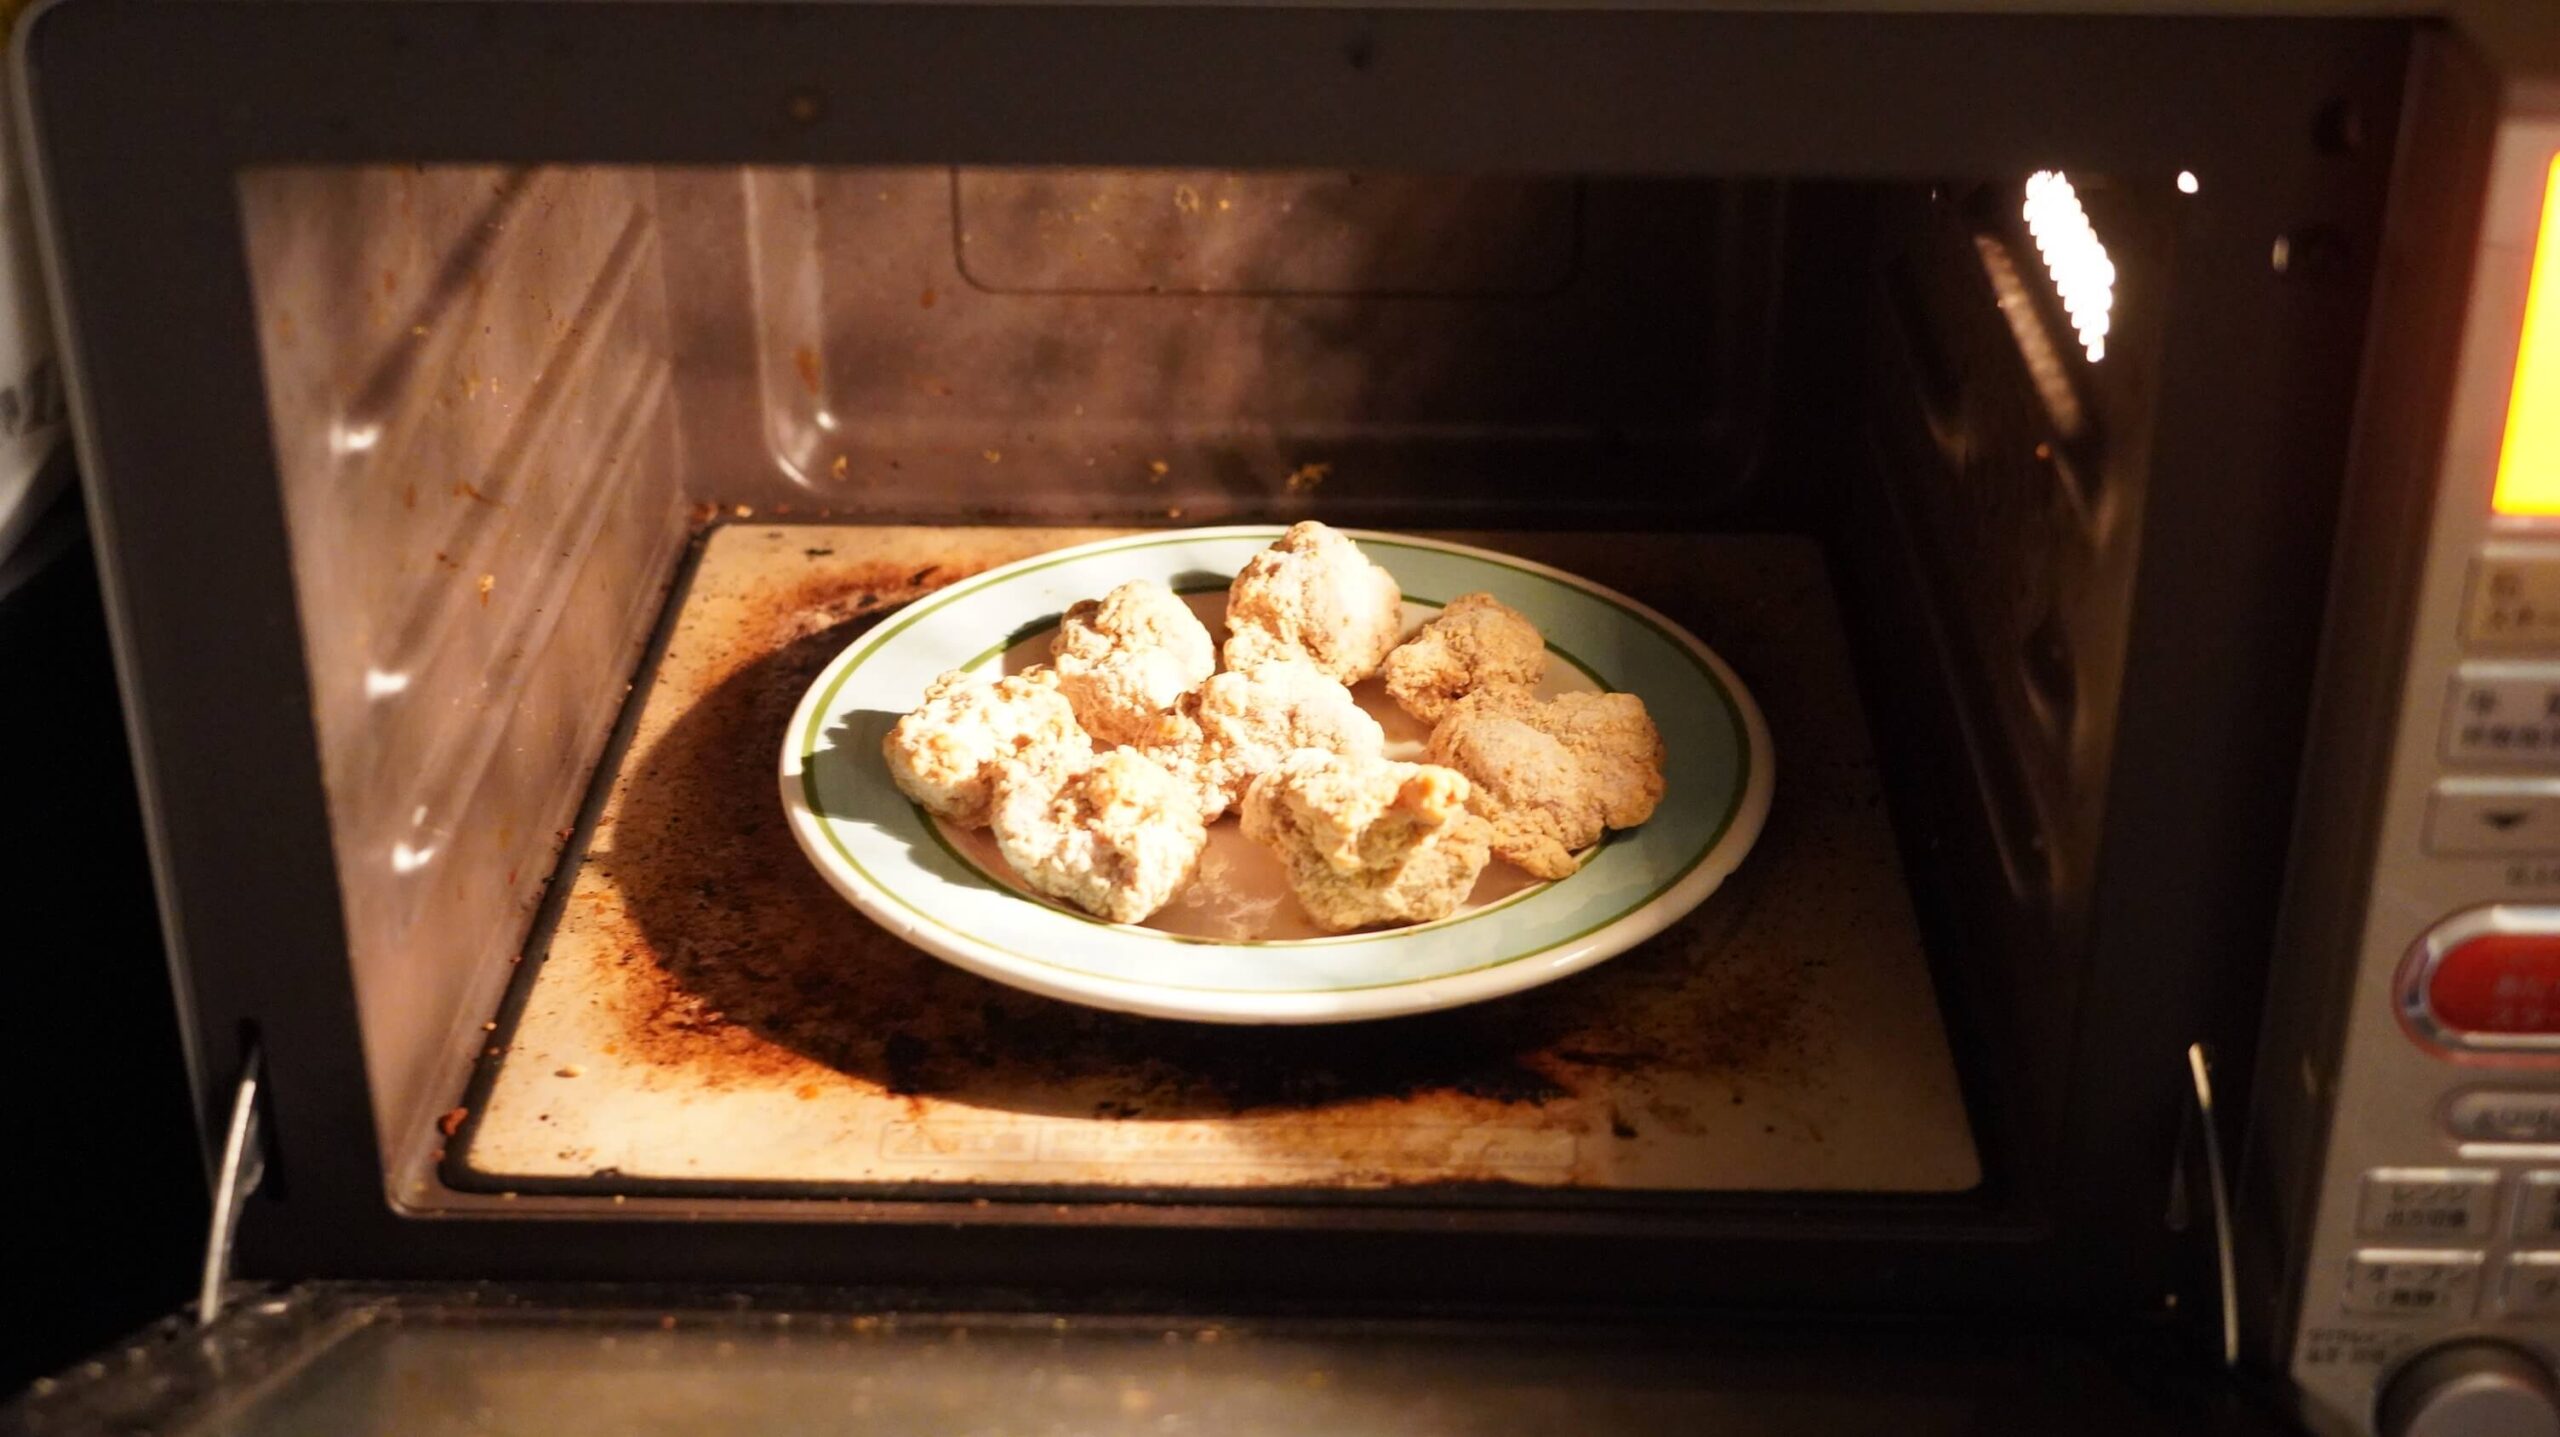 イオン・トップバリュ(TOPVALU)の冷凍食品「若鶏の竜田揚げ」を電子レンジで加熱している写真